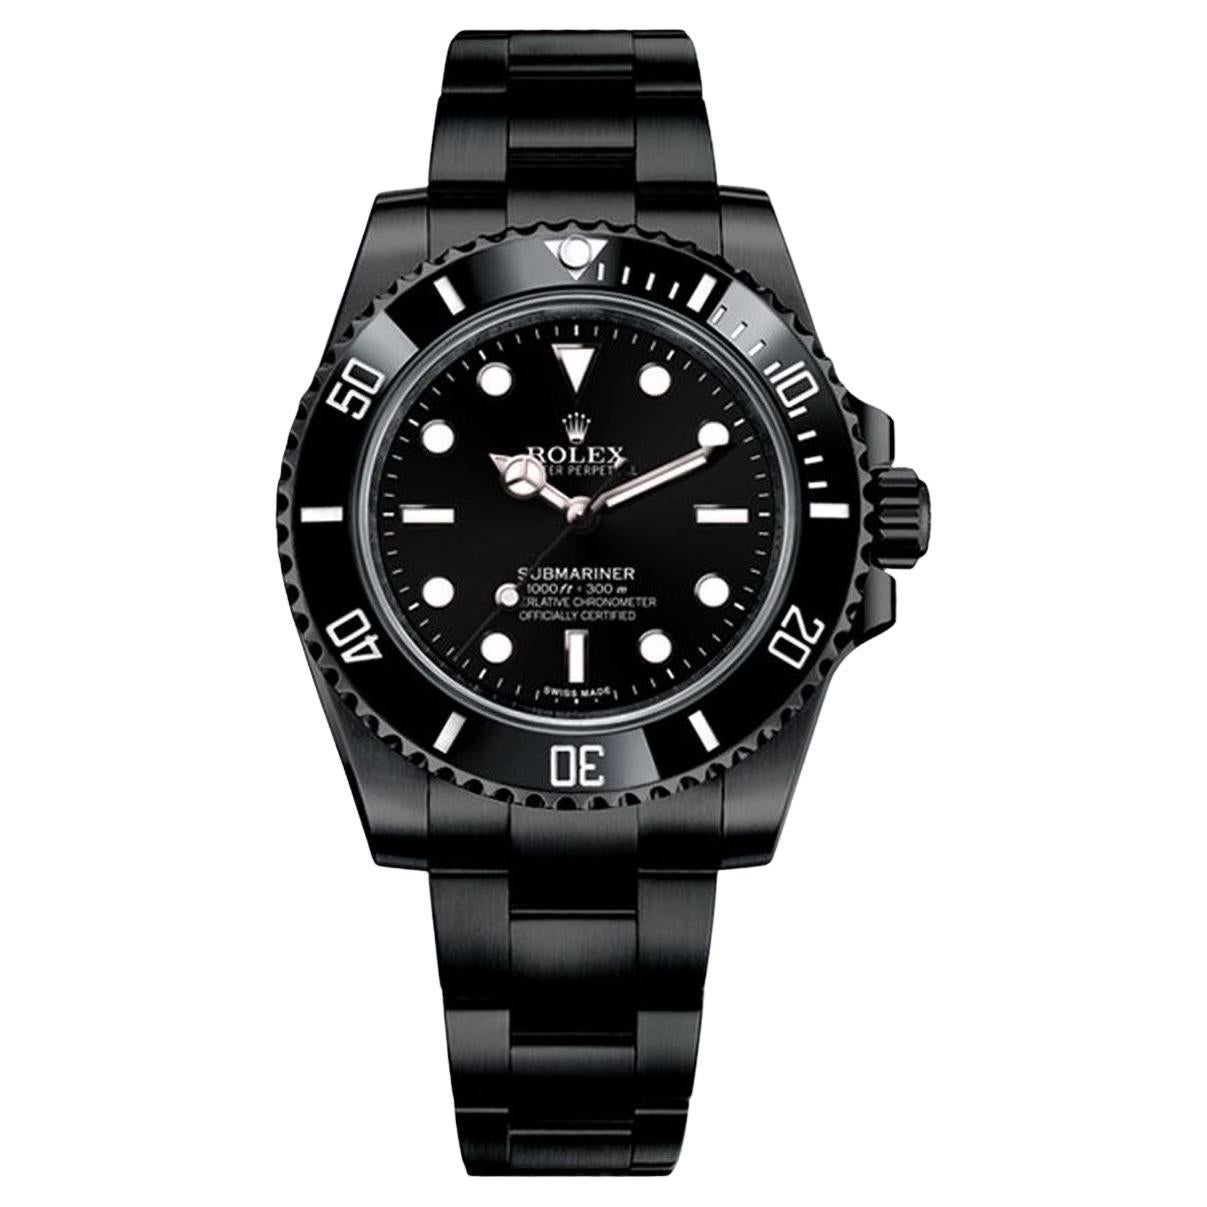 Rolex Submariner (kein Datum) Schwarz PVD/DLC-Uhr aus beschichtetem Edelstahl 114060